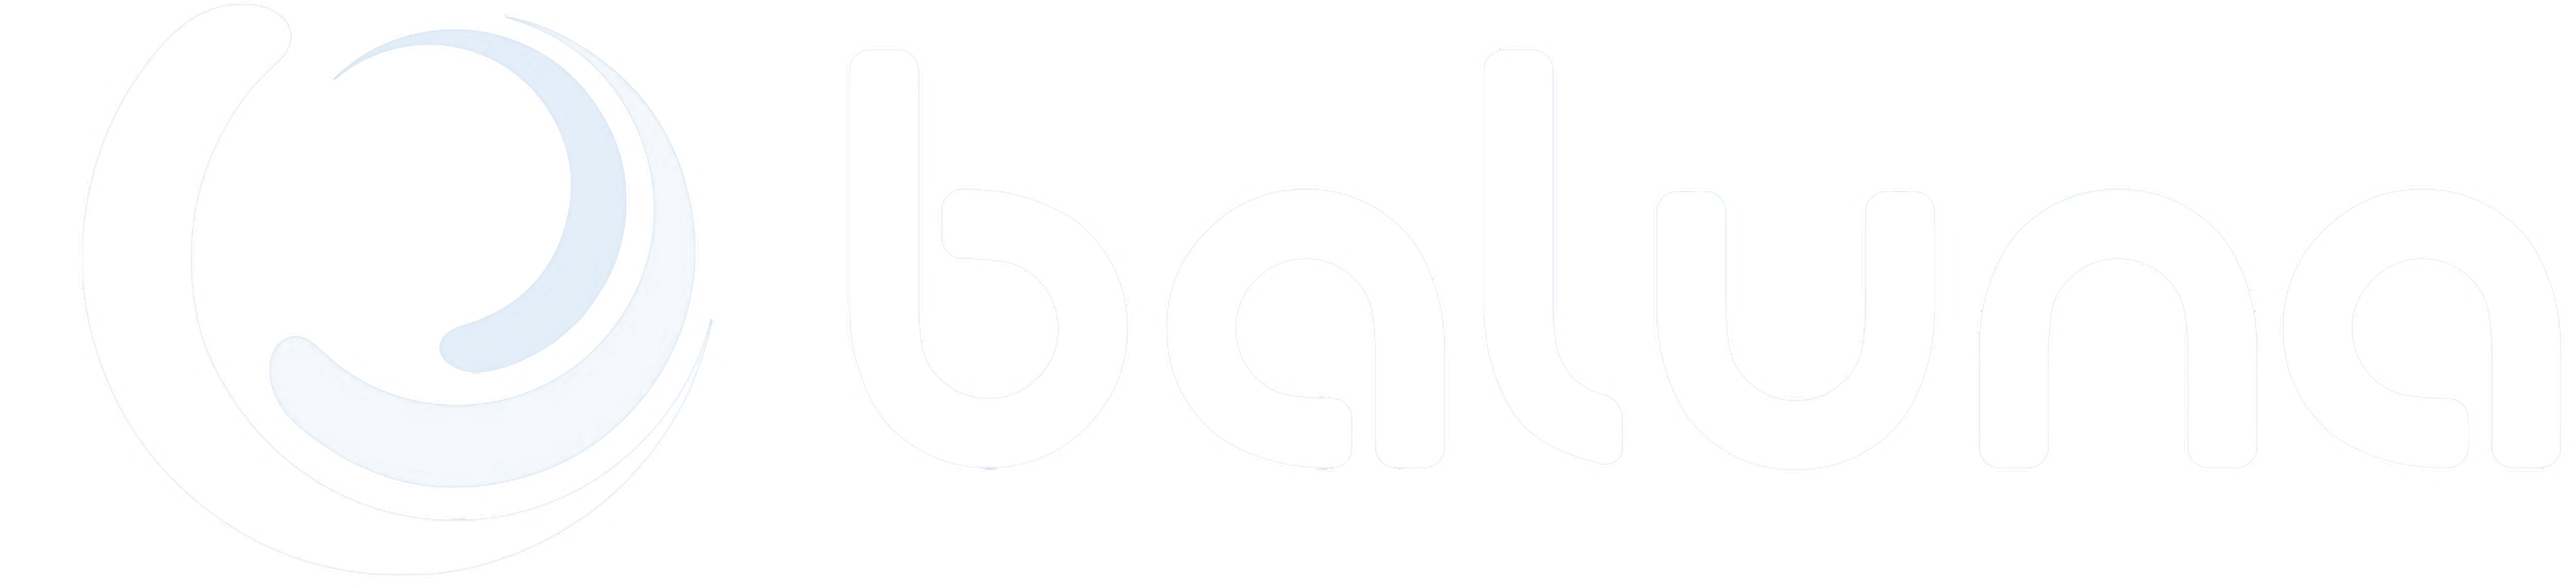 Baluna Logo Transparente Blanco